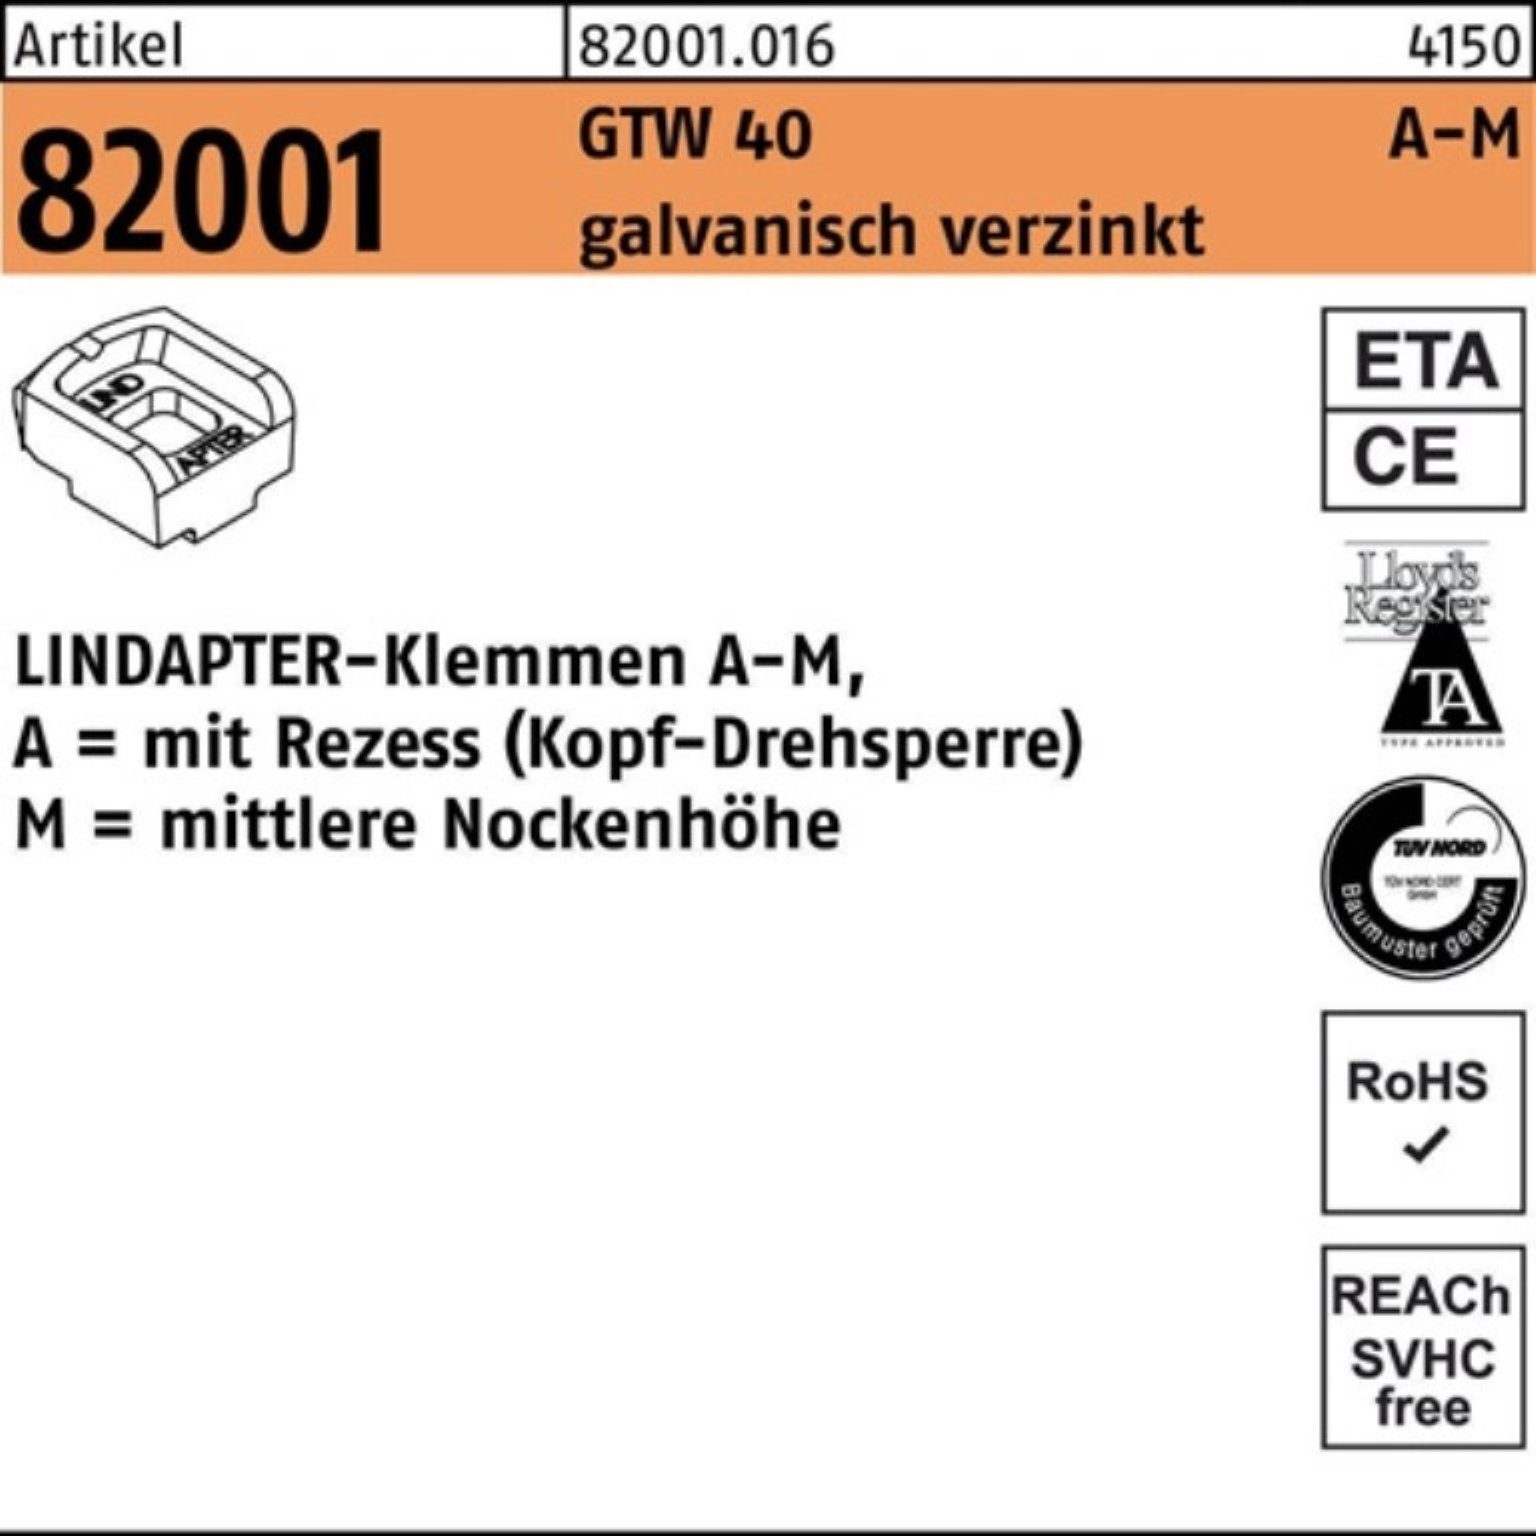 R Klemmen MM 82001 Pack galv.verz. 1 GTW Lindapter Stück 20/10,0 LINDA 100er 40 Klemmen